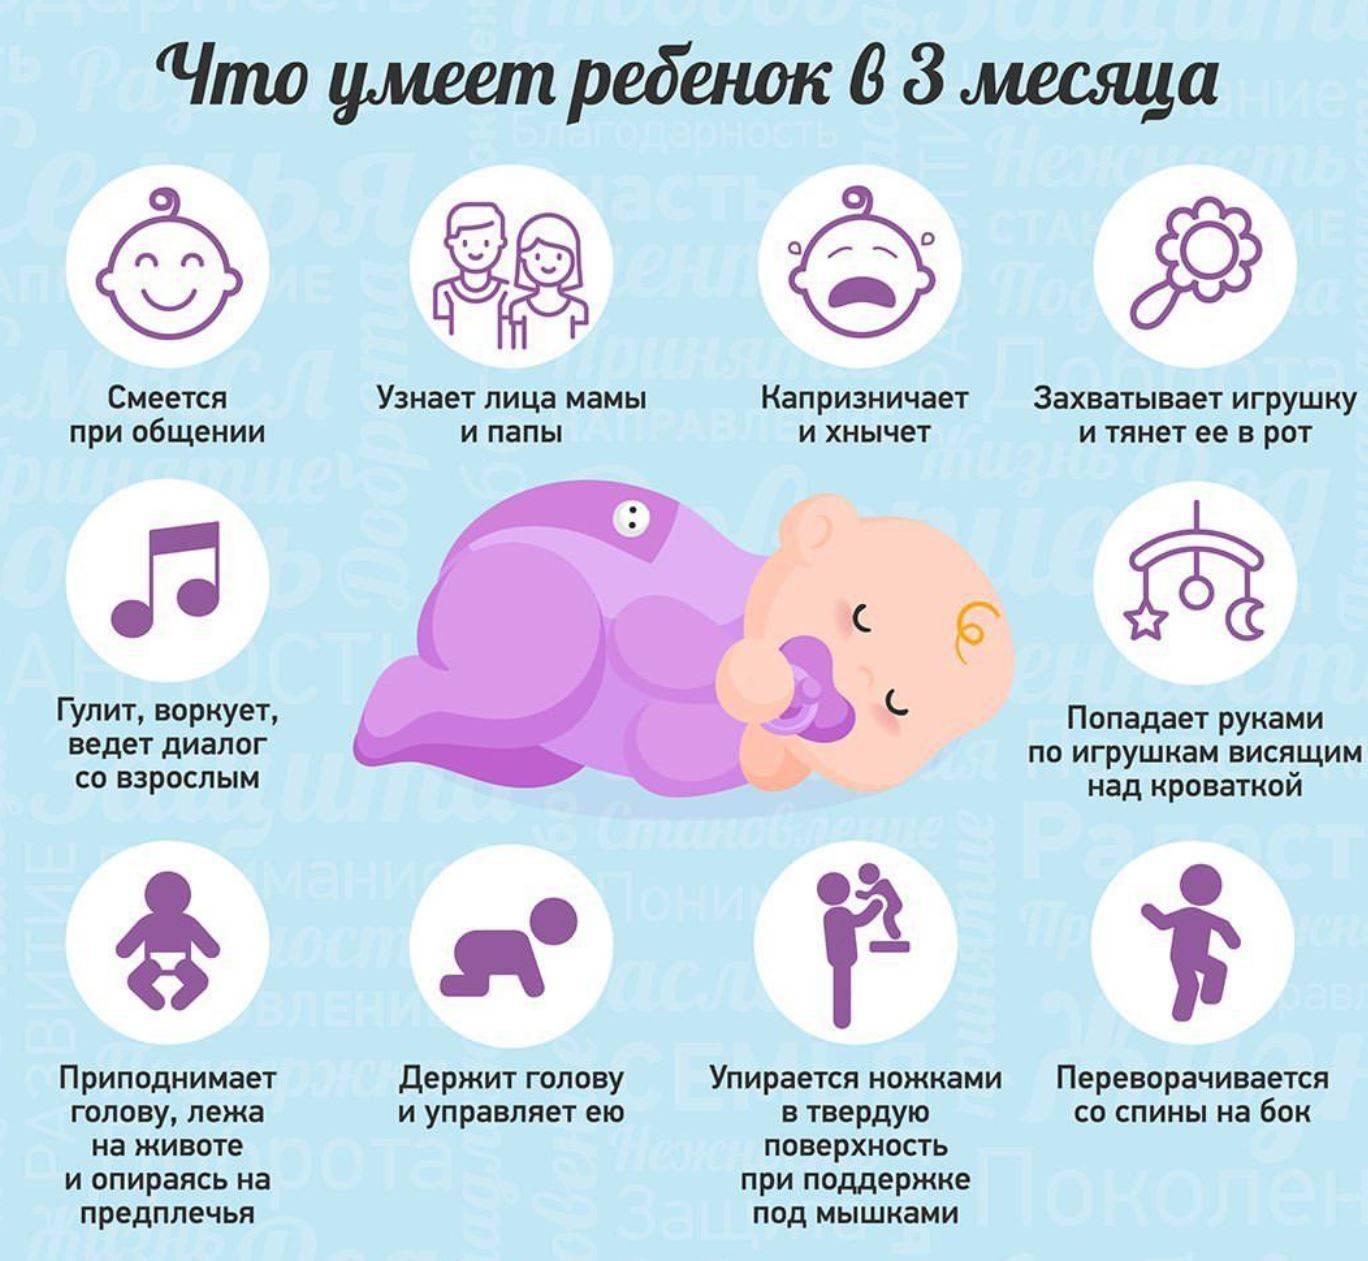 Развитие ребенка в 1 год 2 месяца: все что должен уметь делать малыш, физические параметры, а также особенности питания в год и два месяца